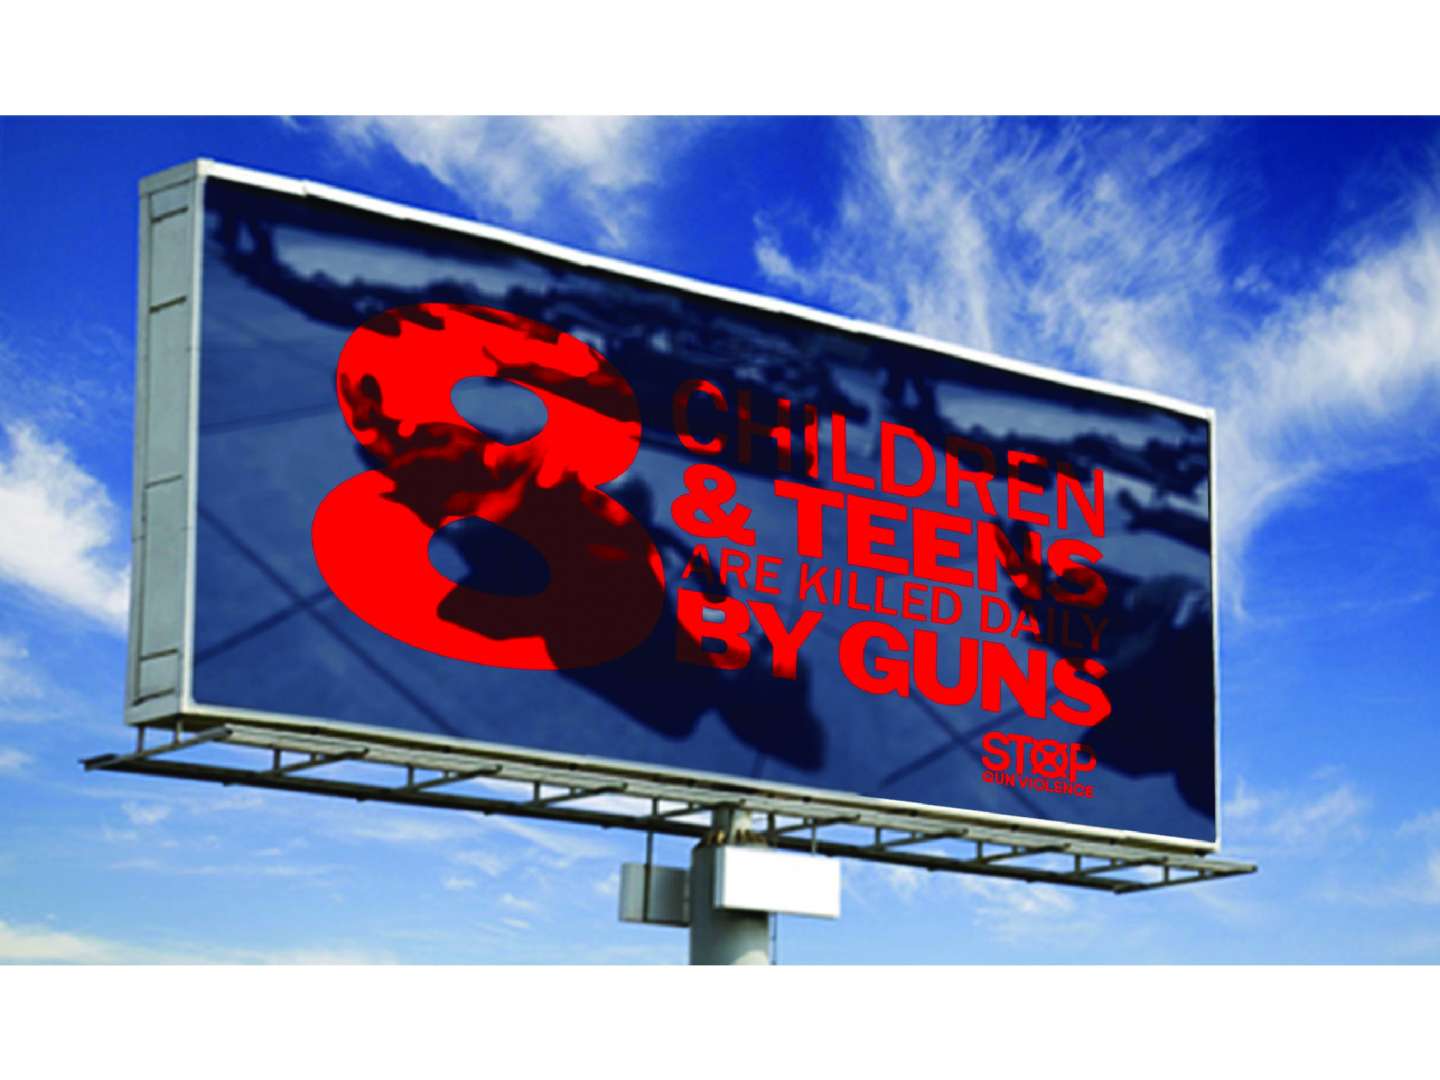 Gun control campaign